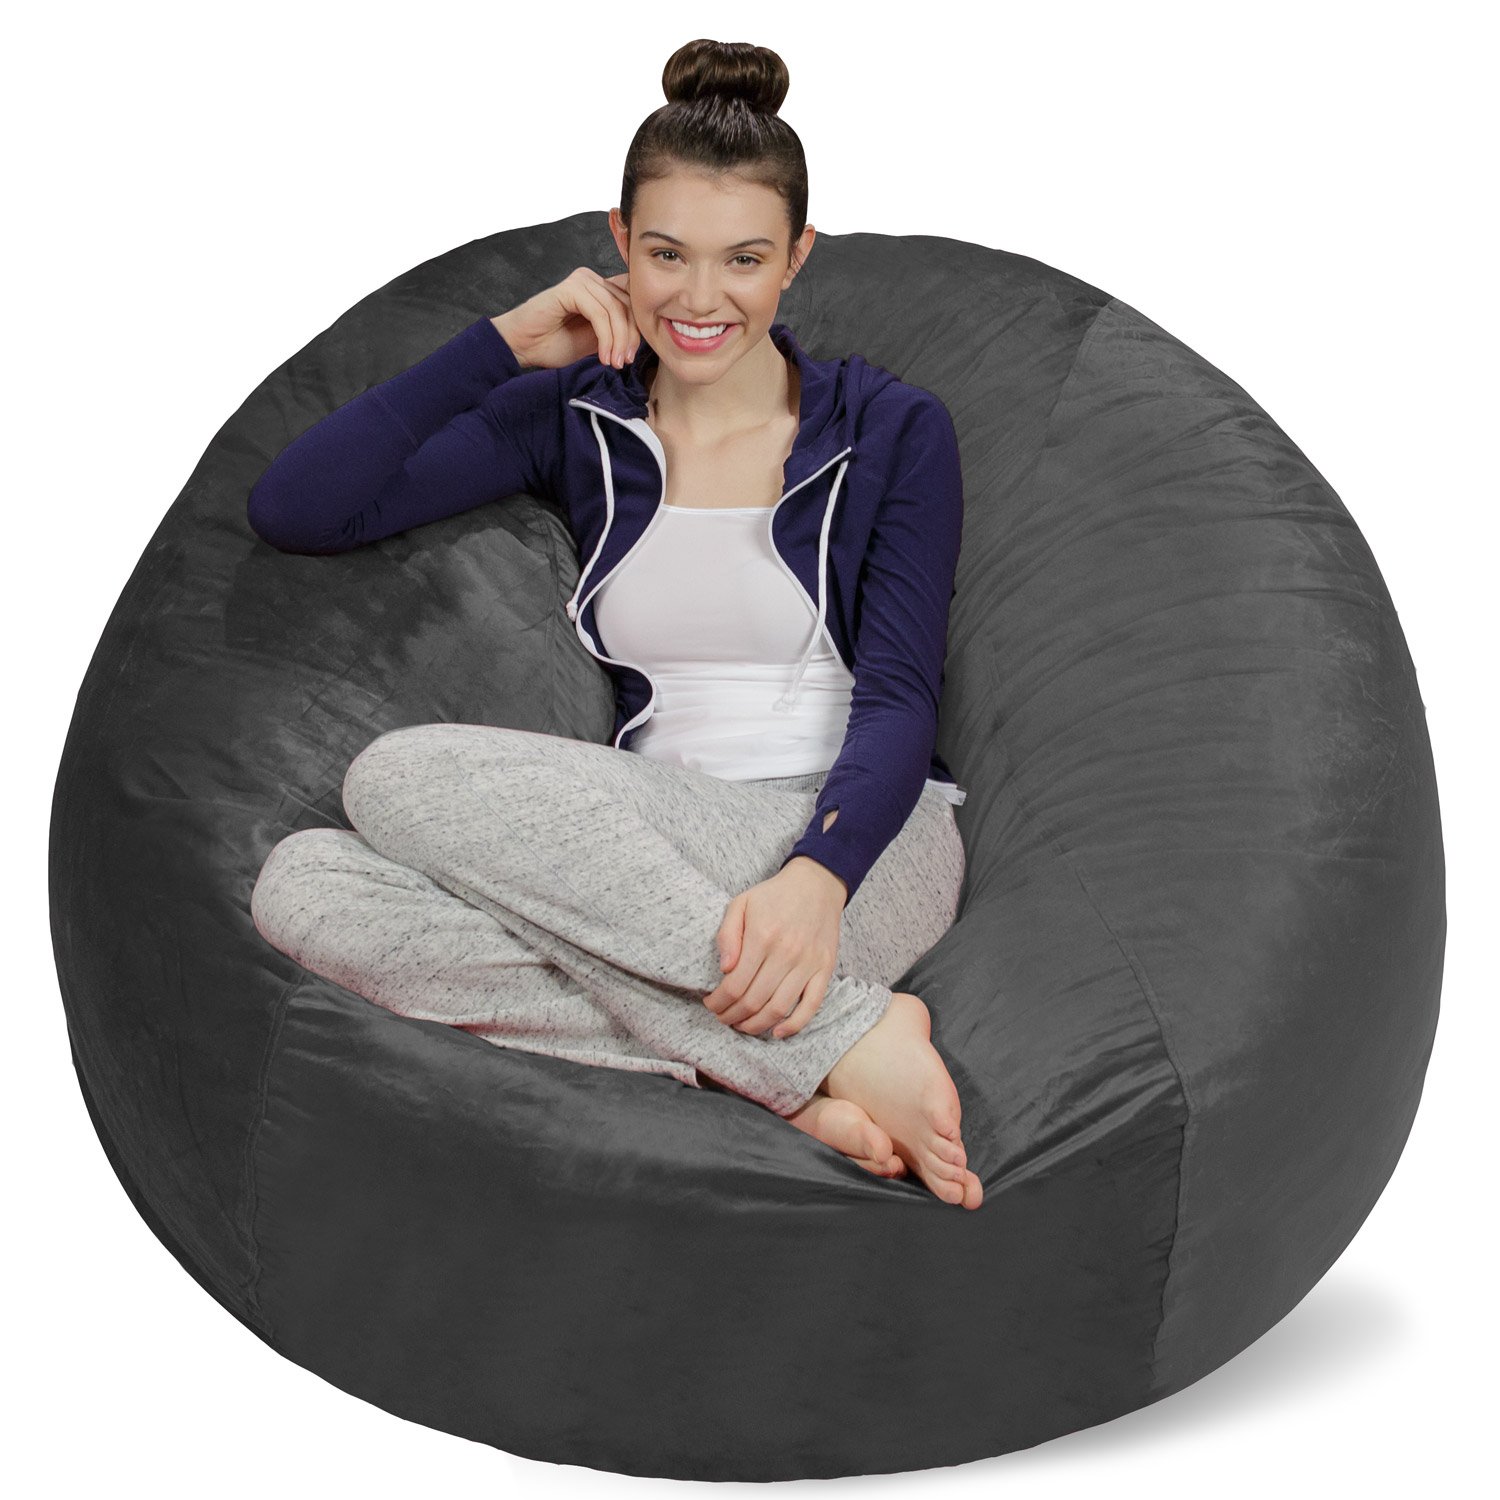 Sofa Sack - Plush, Ultra Soft Bean Bag Chair - Memory Foam Bean Bag Chair  with Microsuede Cover -